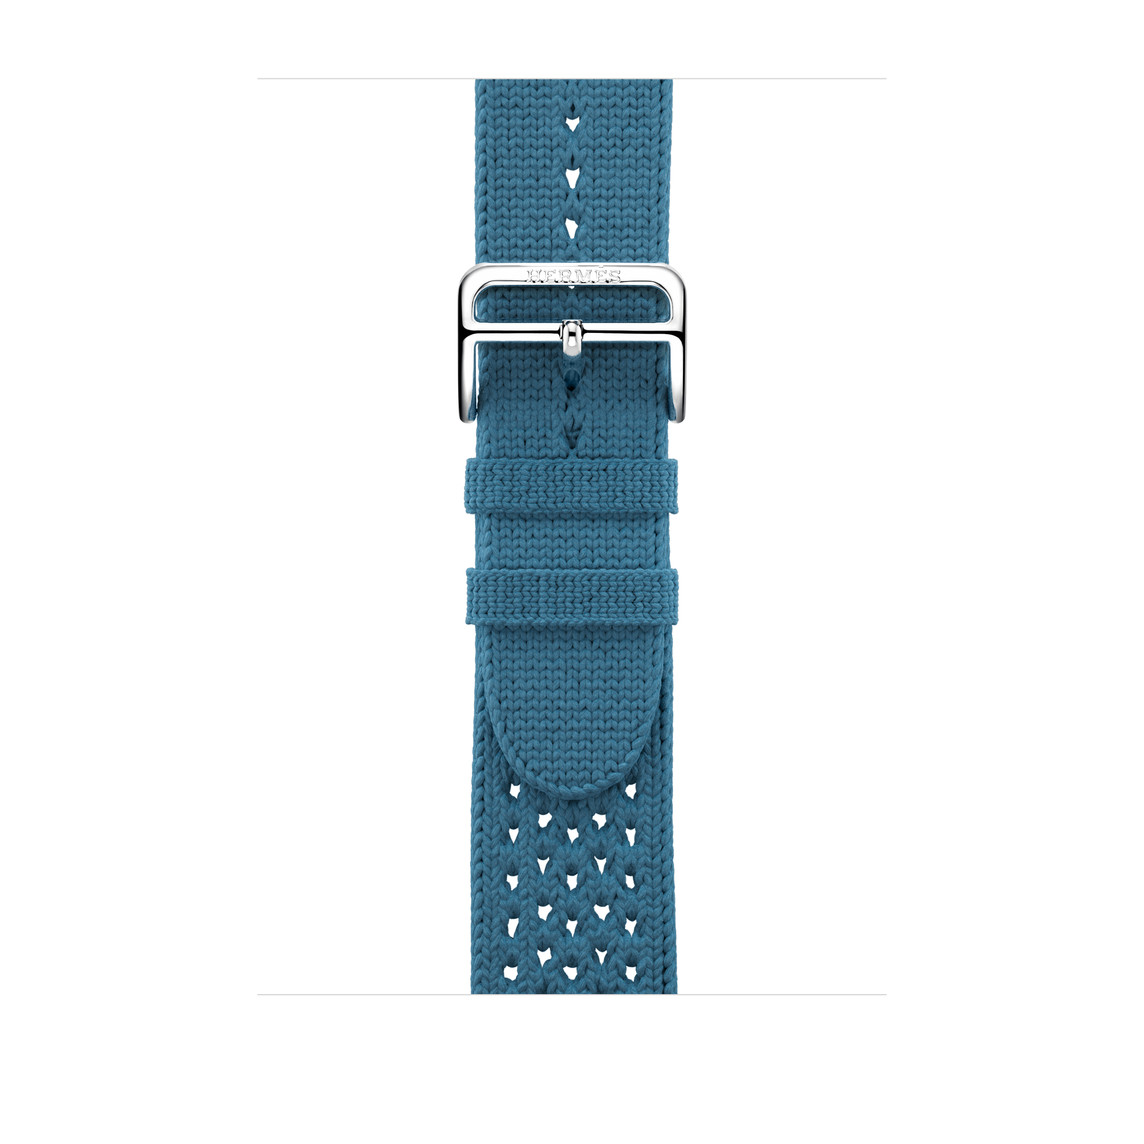 Tricot Simple Tour-armband i Bleu Jean (blått), vävd textil och spänne i silverfärgat rostfritt stål.